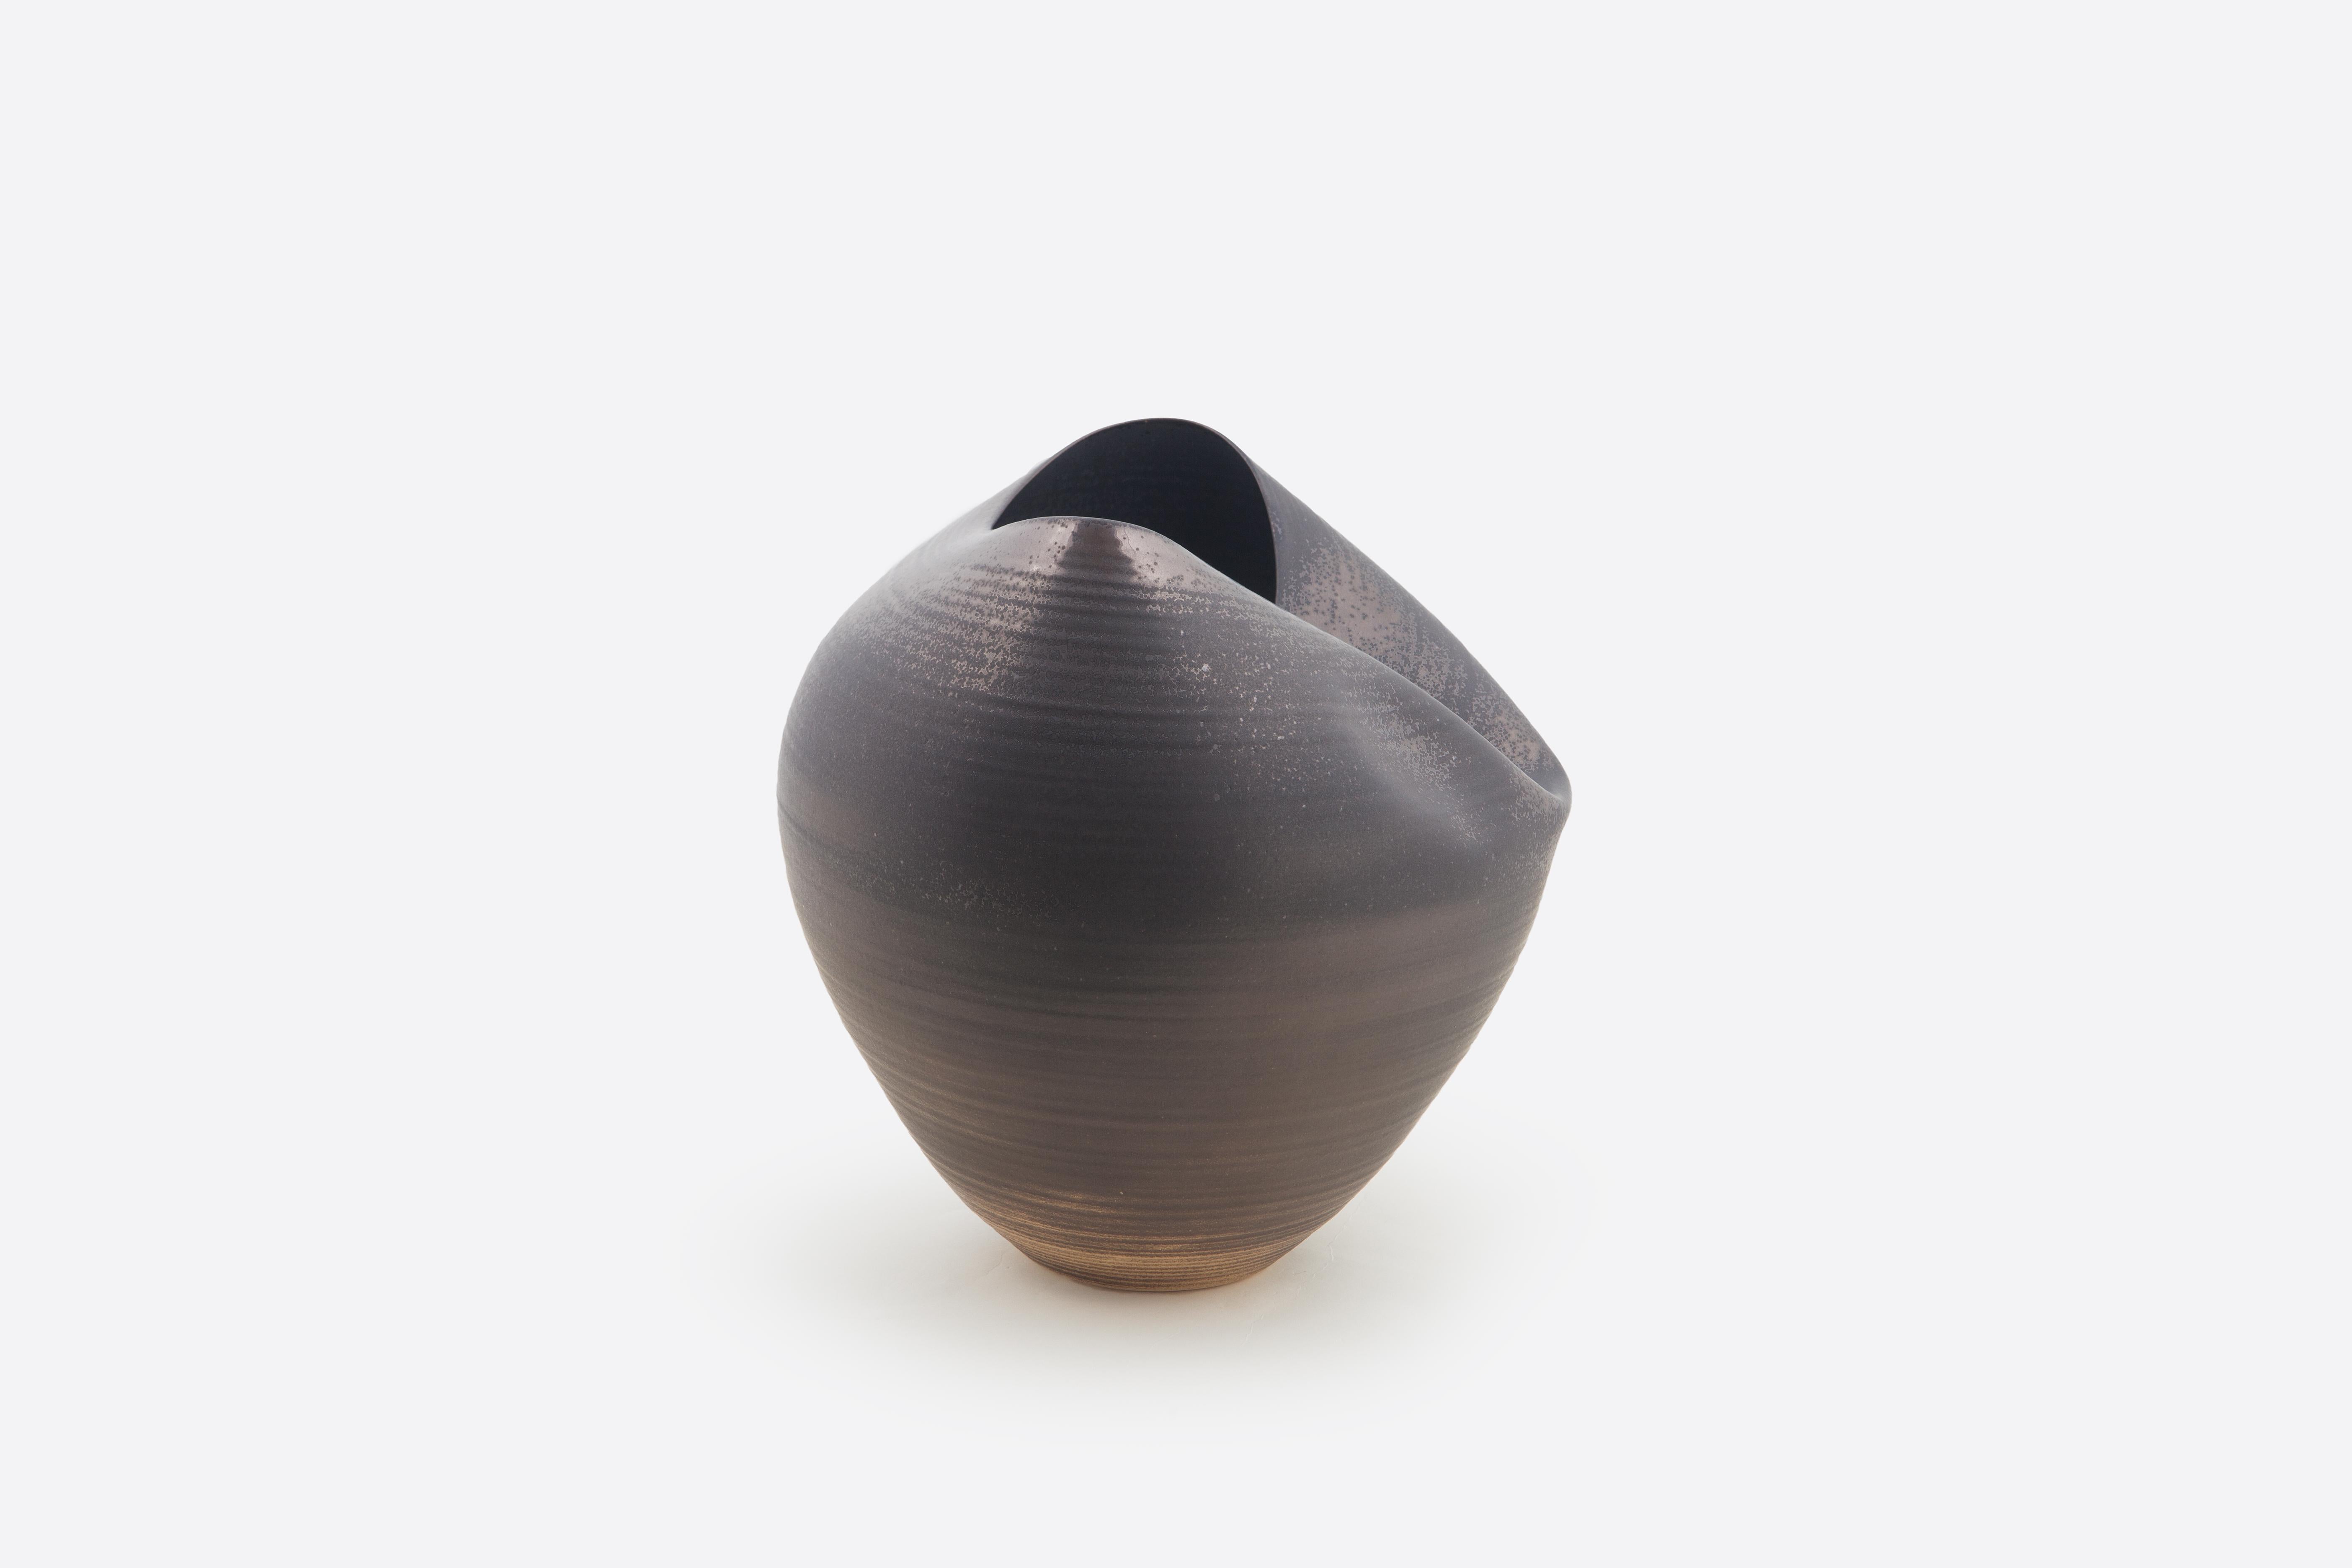 Spanish Large Black Collapsed Form, Vase, Interior Sculpture or Vessel, Objet D'Art